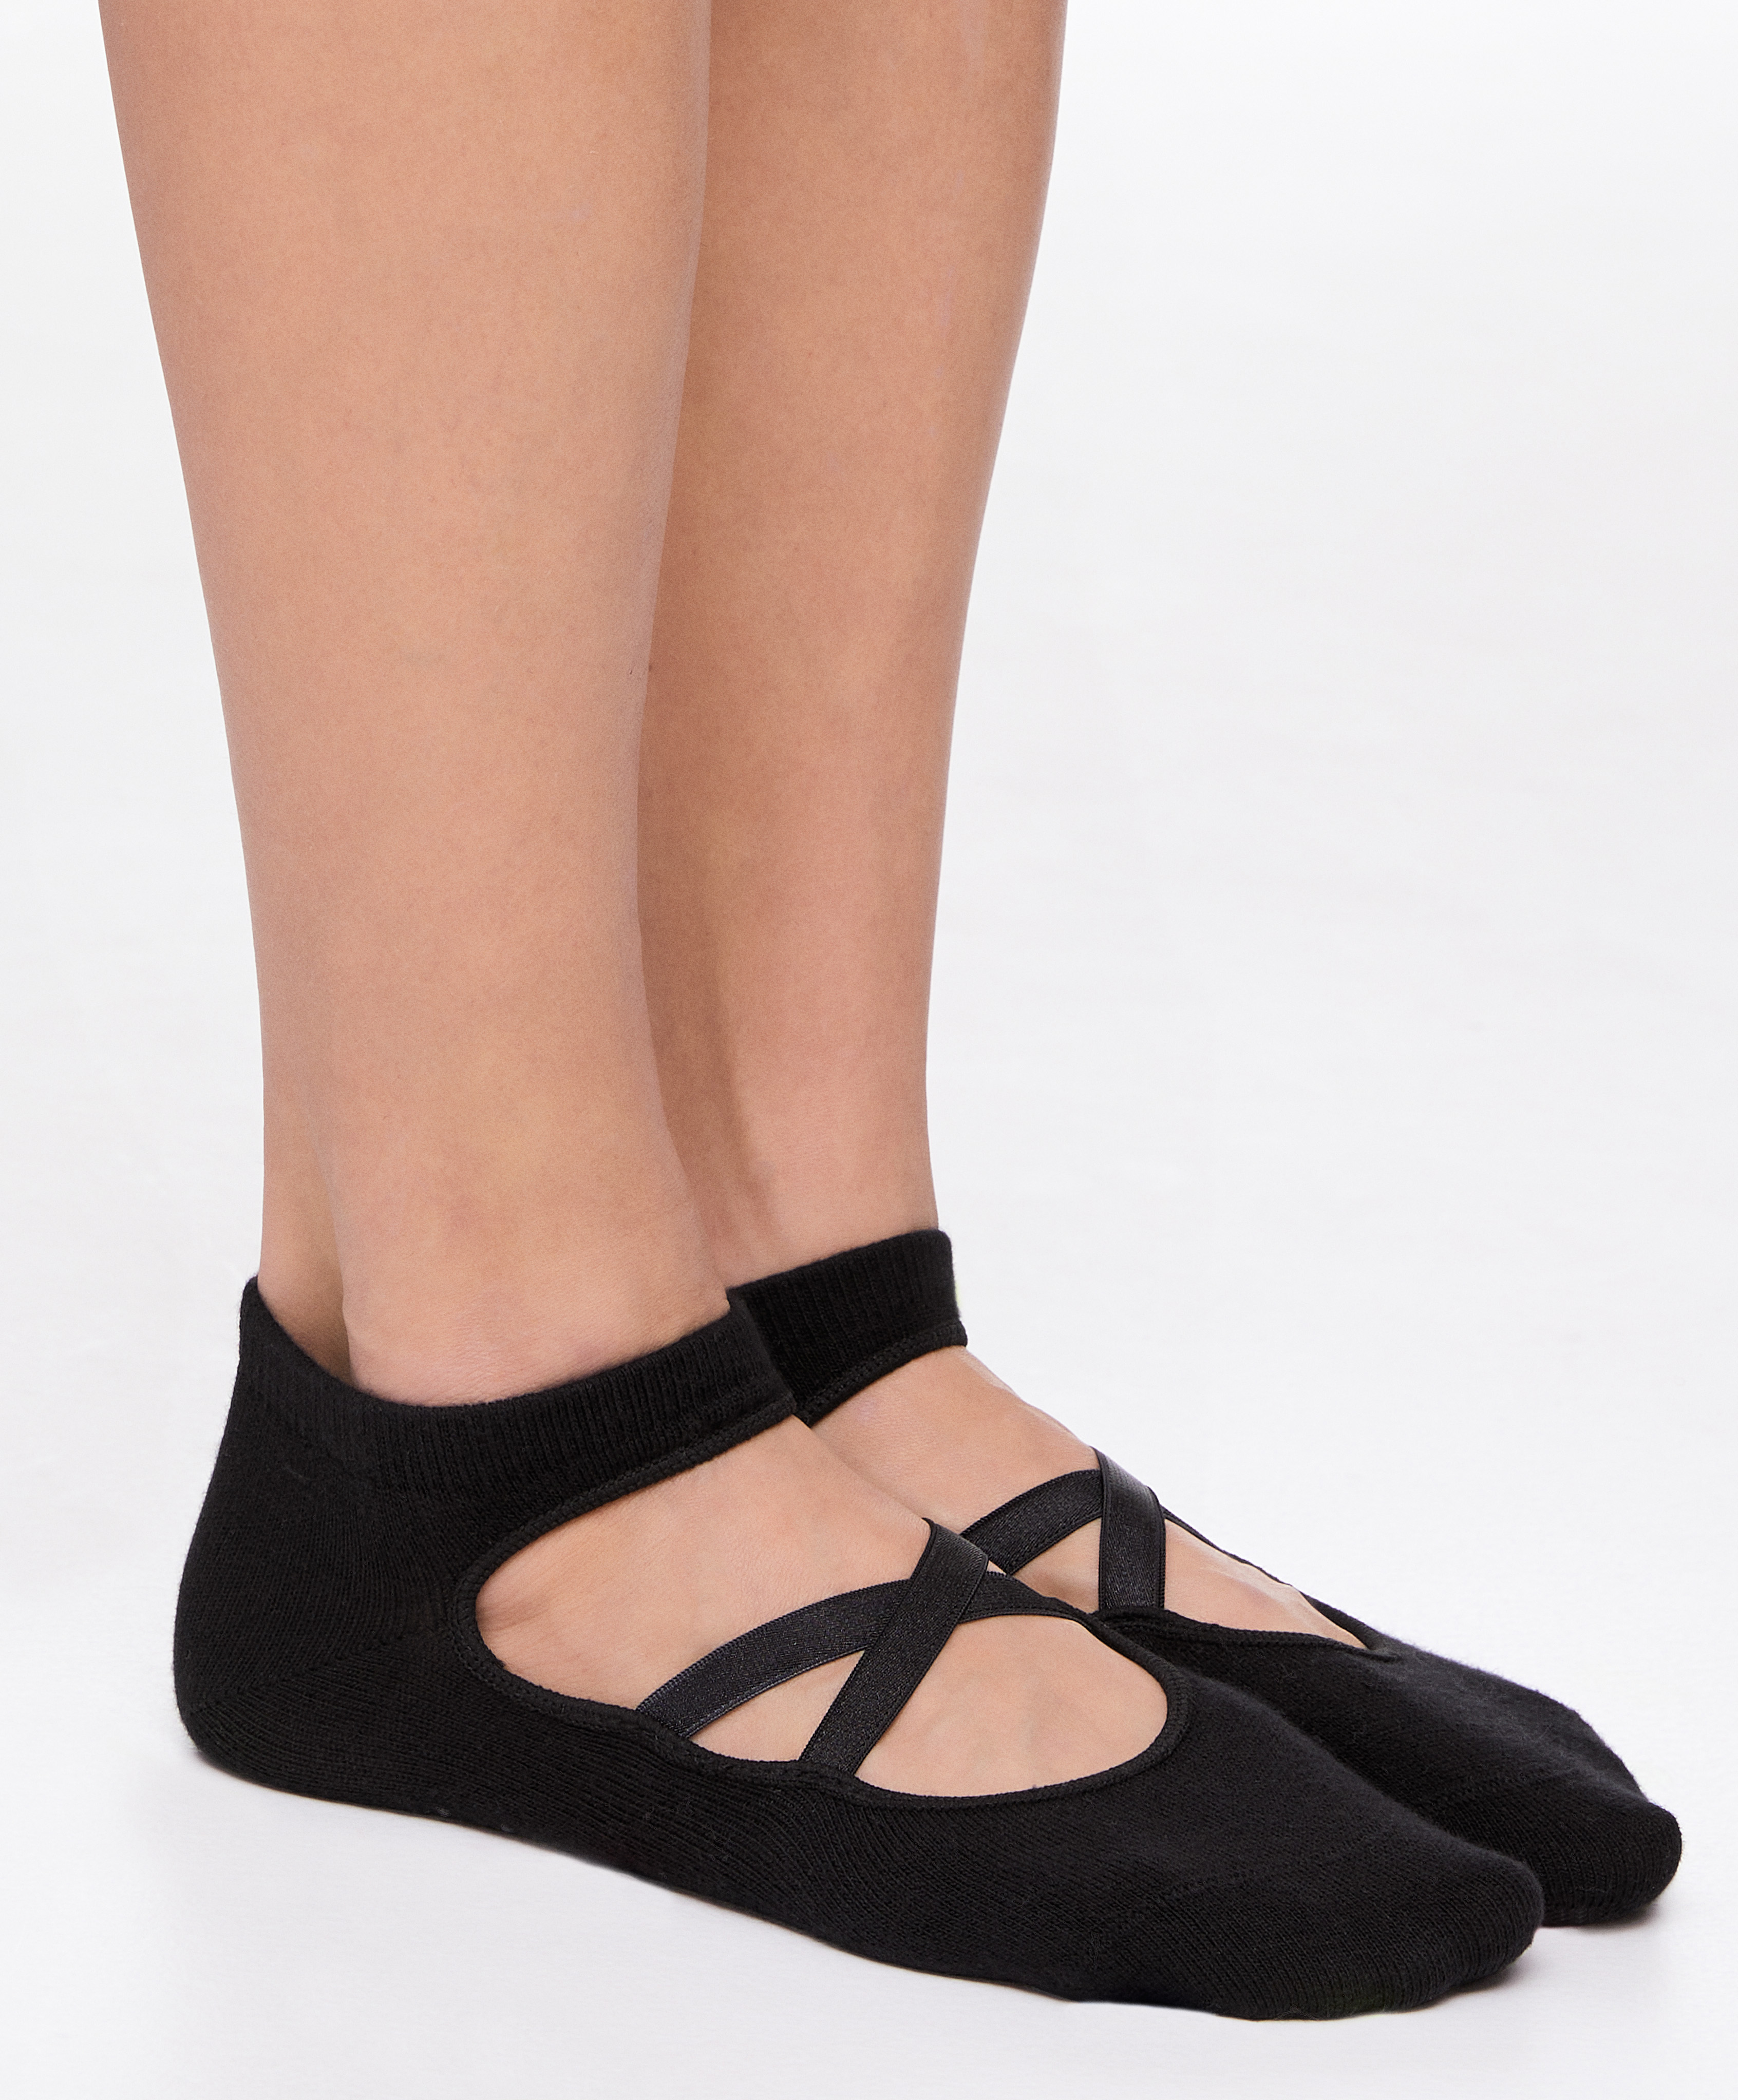 Calcetines de Yoga para mujer, medias antideslizantes con pinzas